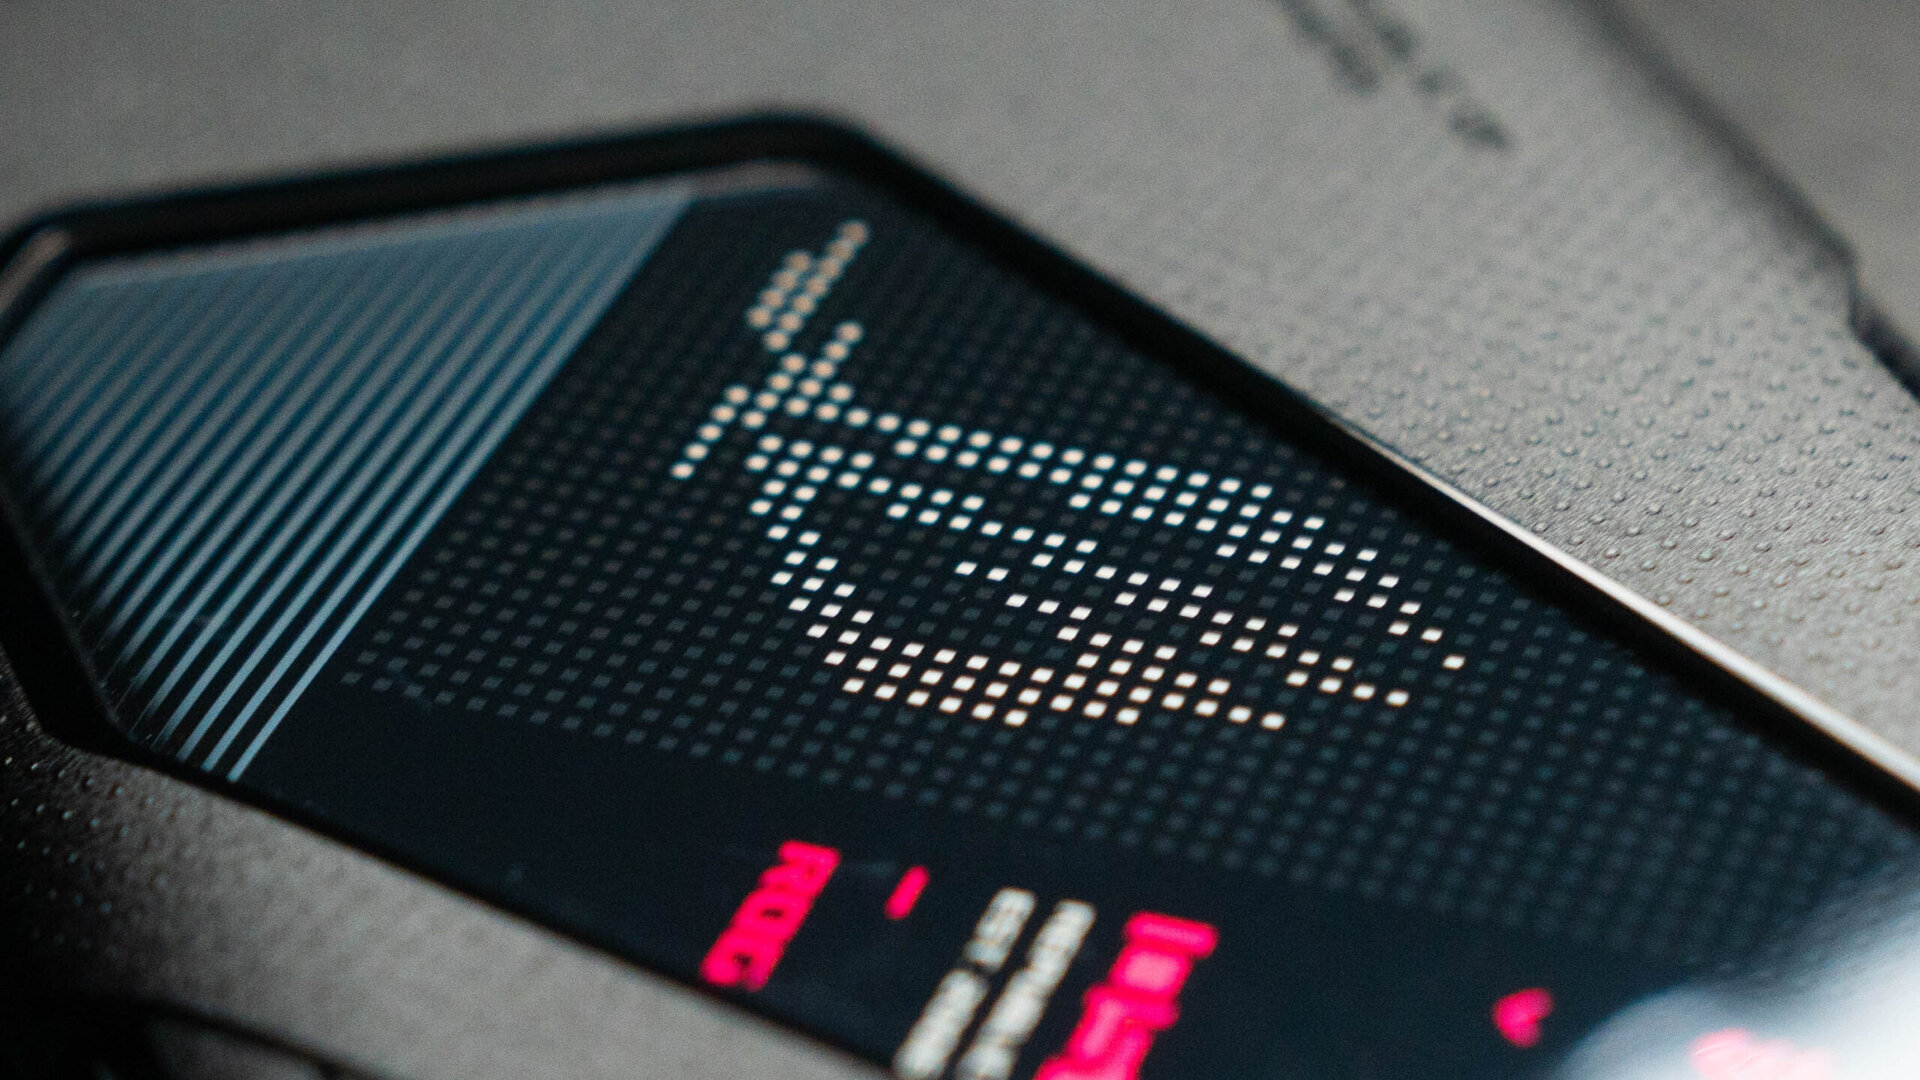 Gambar produk Asus ROG Phone 5 dari logo ROG LED melalui casing yang disertakan